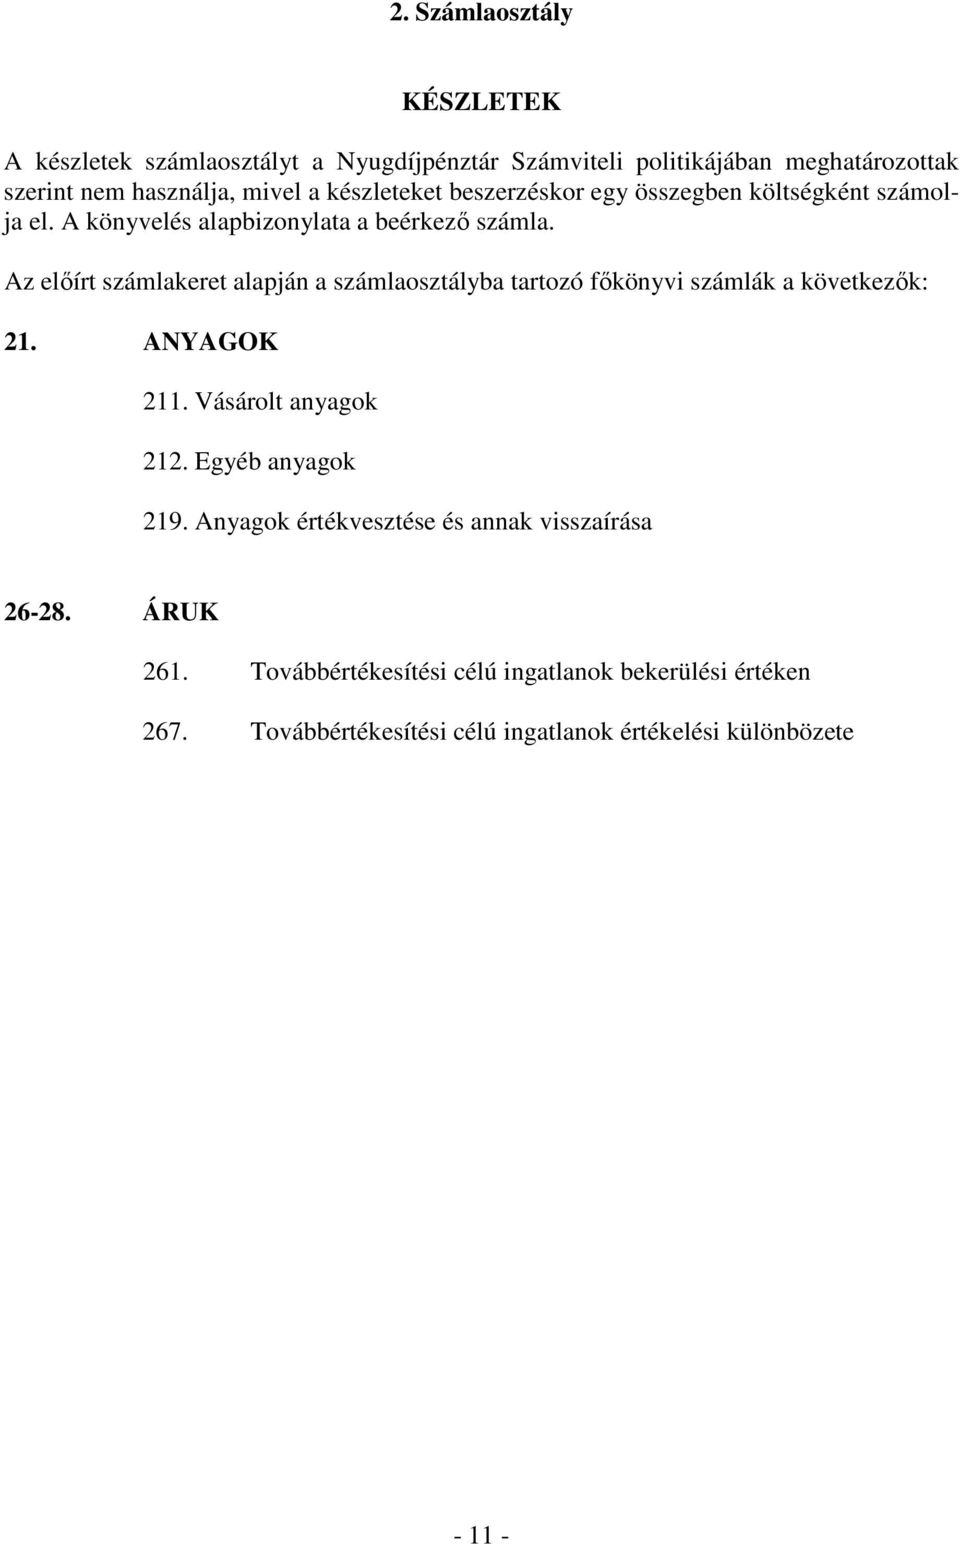 Az elıírt számlakeret alapján a számlaosztályba tartozó fıkönyvi számlák a következık: 21. ANYAGOK 211. Vásárolt anyagok 212. Egyéb anyagok 219.